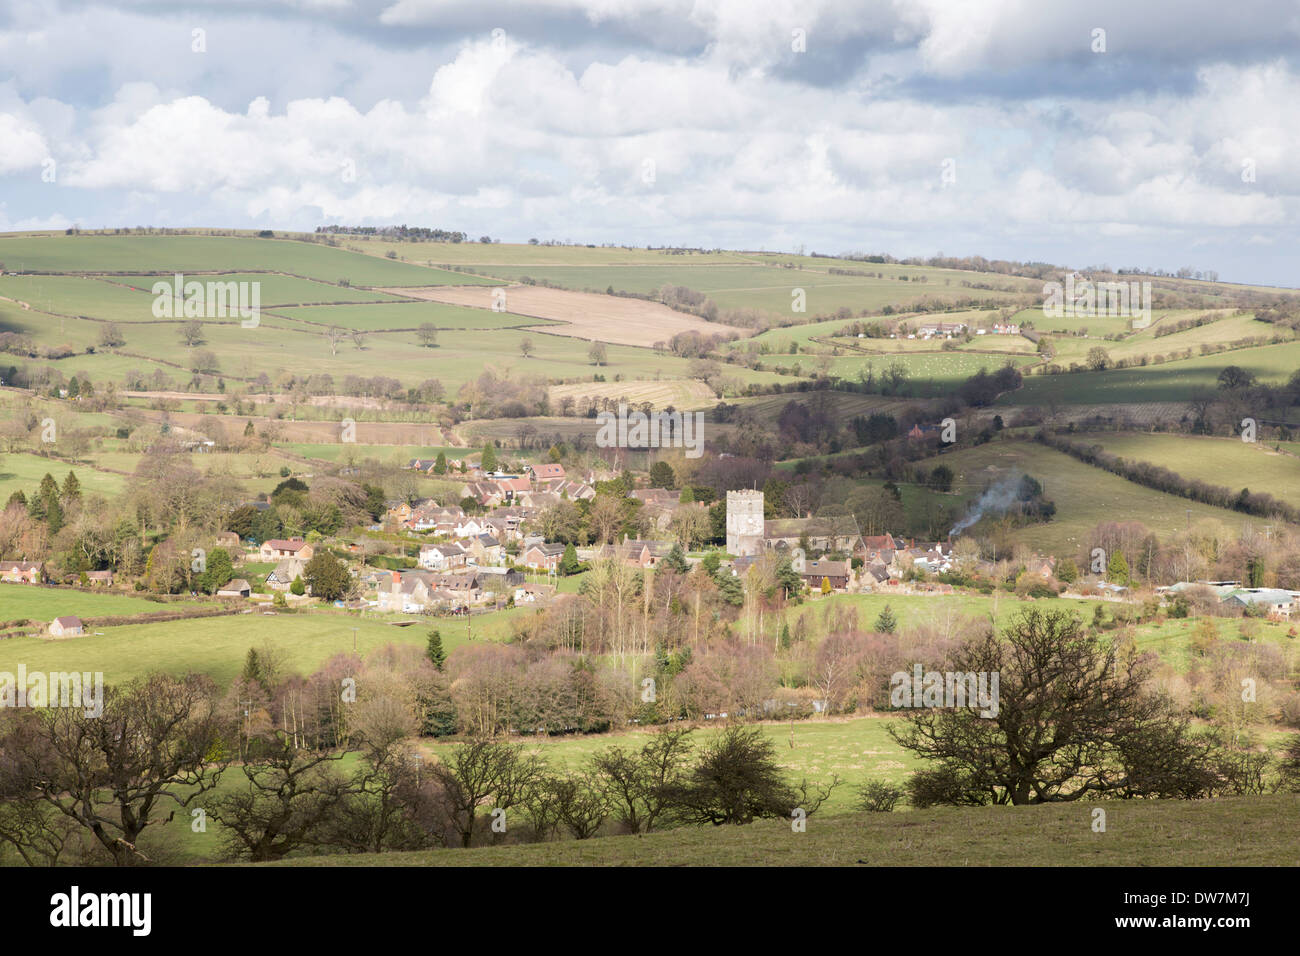 Shropshire Hills near Hope Bowdler looking towards village of Cardington, Shropshire, England, UK Stock Photo